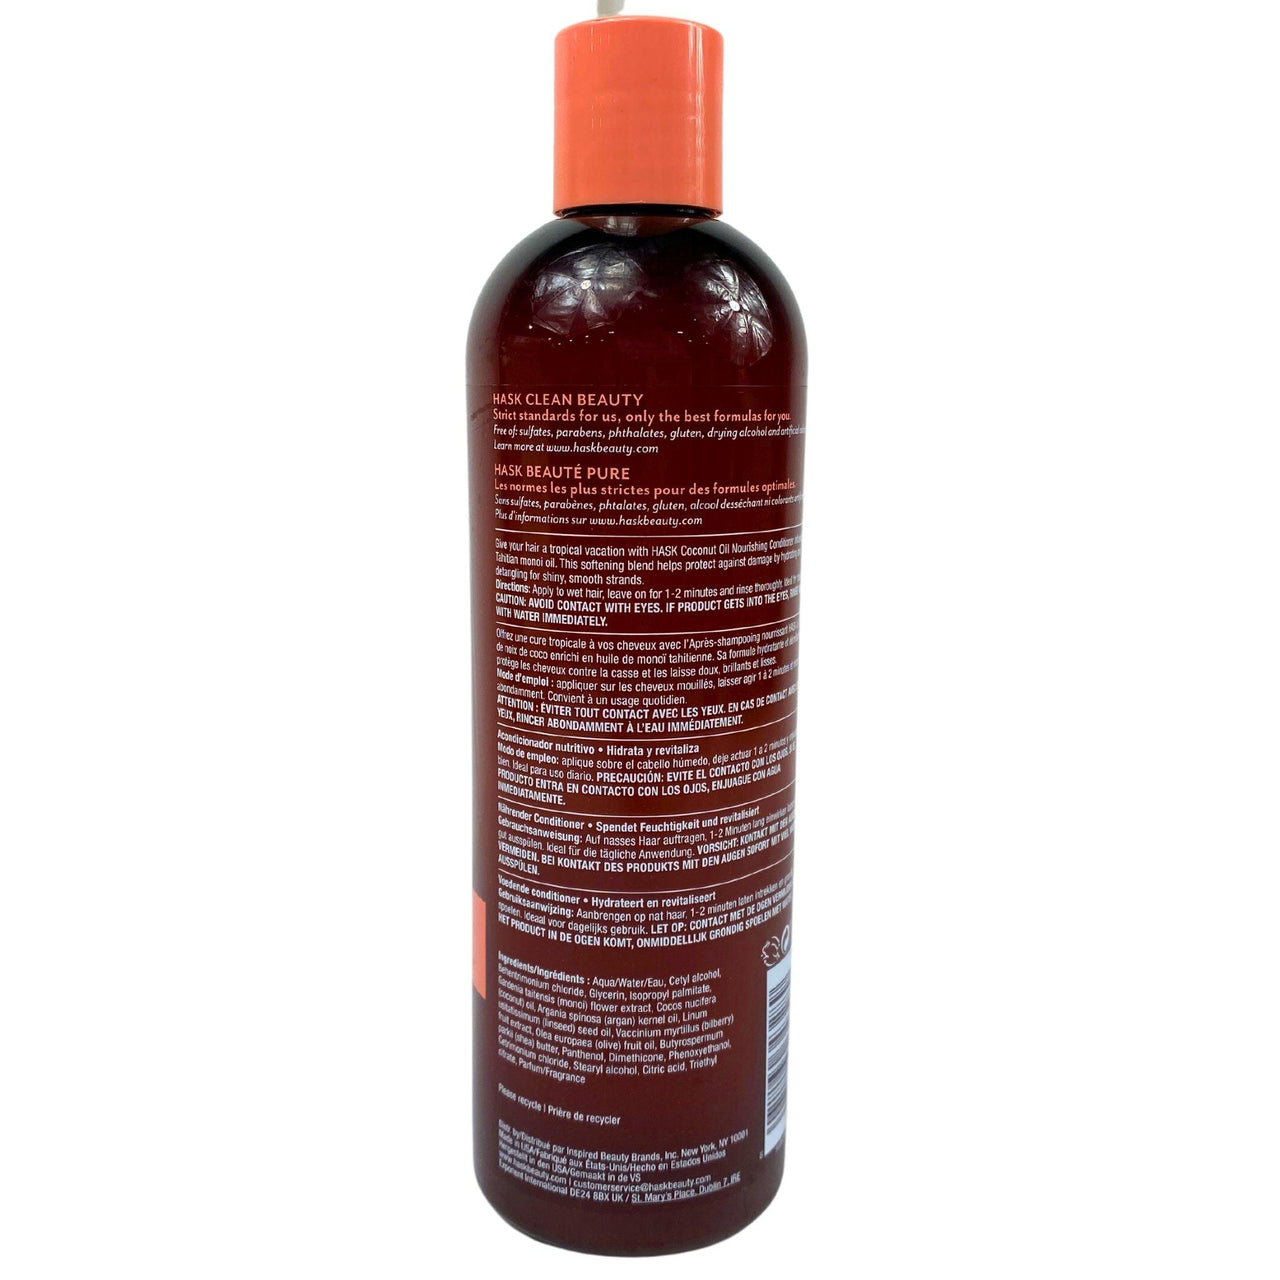 HASK Monoi Coconut Oil Nourishing Conditioner 12OZ (50 Pcs Lot) - Discount Wholesalers Inc